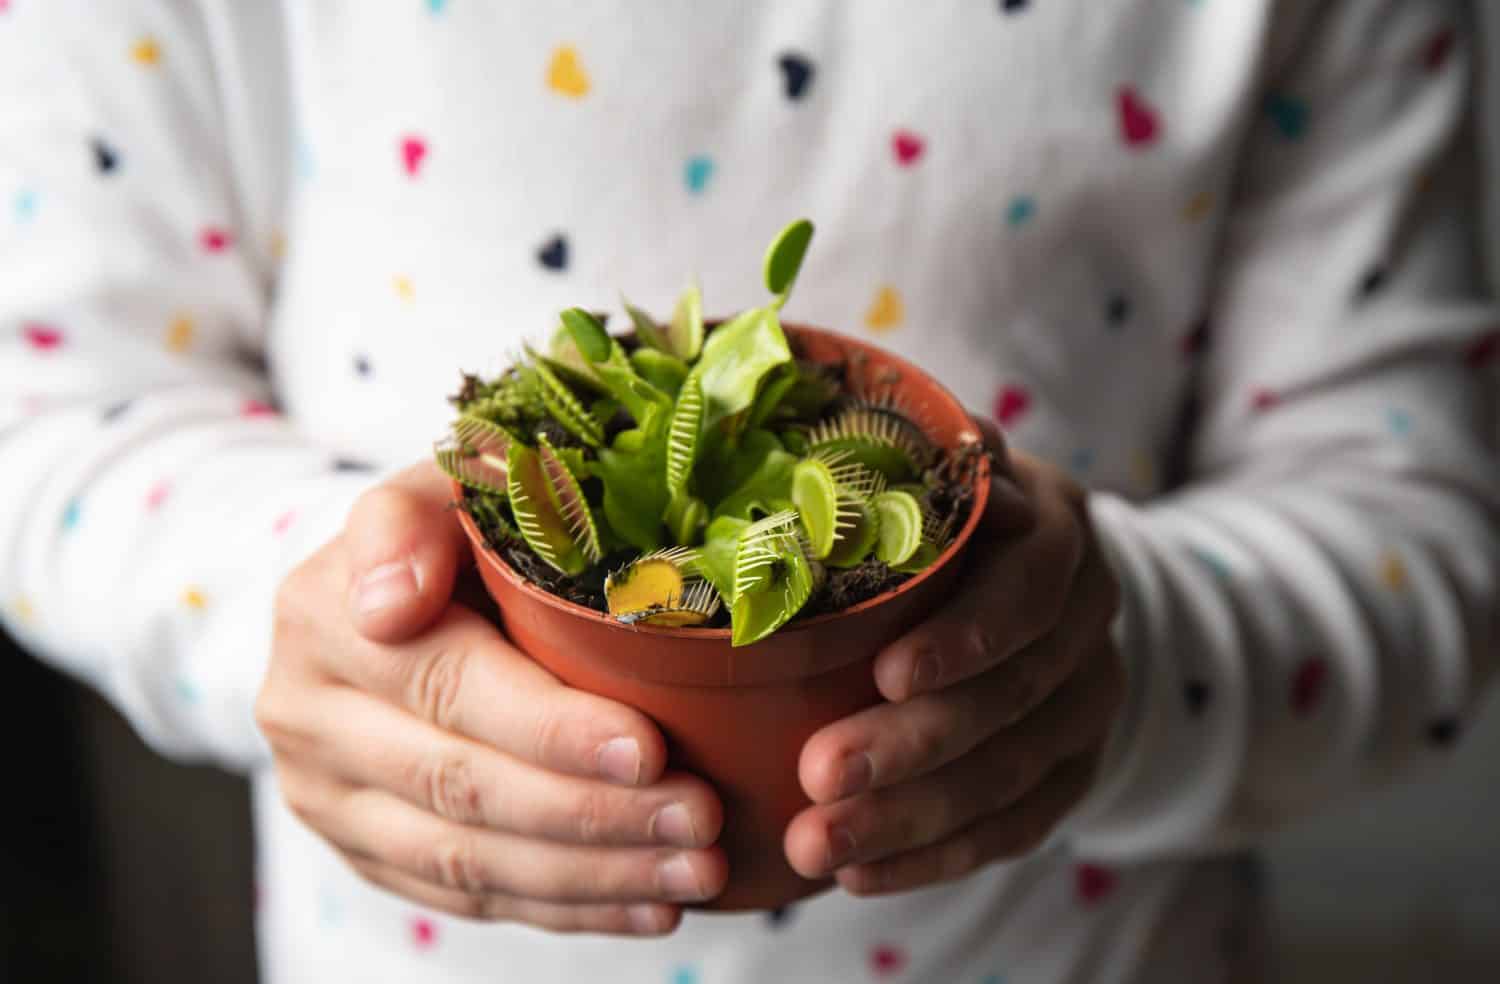 Vista ravvicinata delle mani del bambino che tengono il vaso di fiori Venus flytrap, Dionaea muscipula in casa.  Interessante concetto alternativo di pianta domestica.